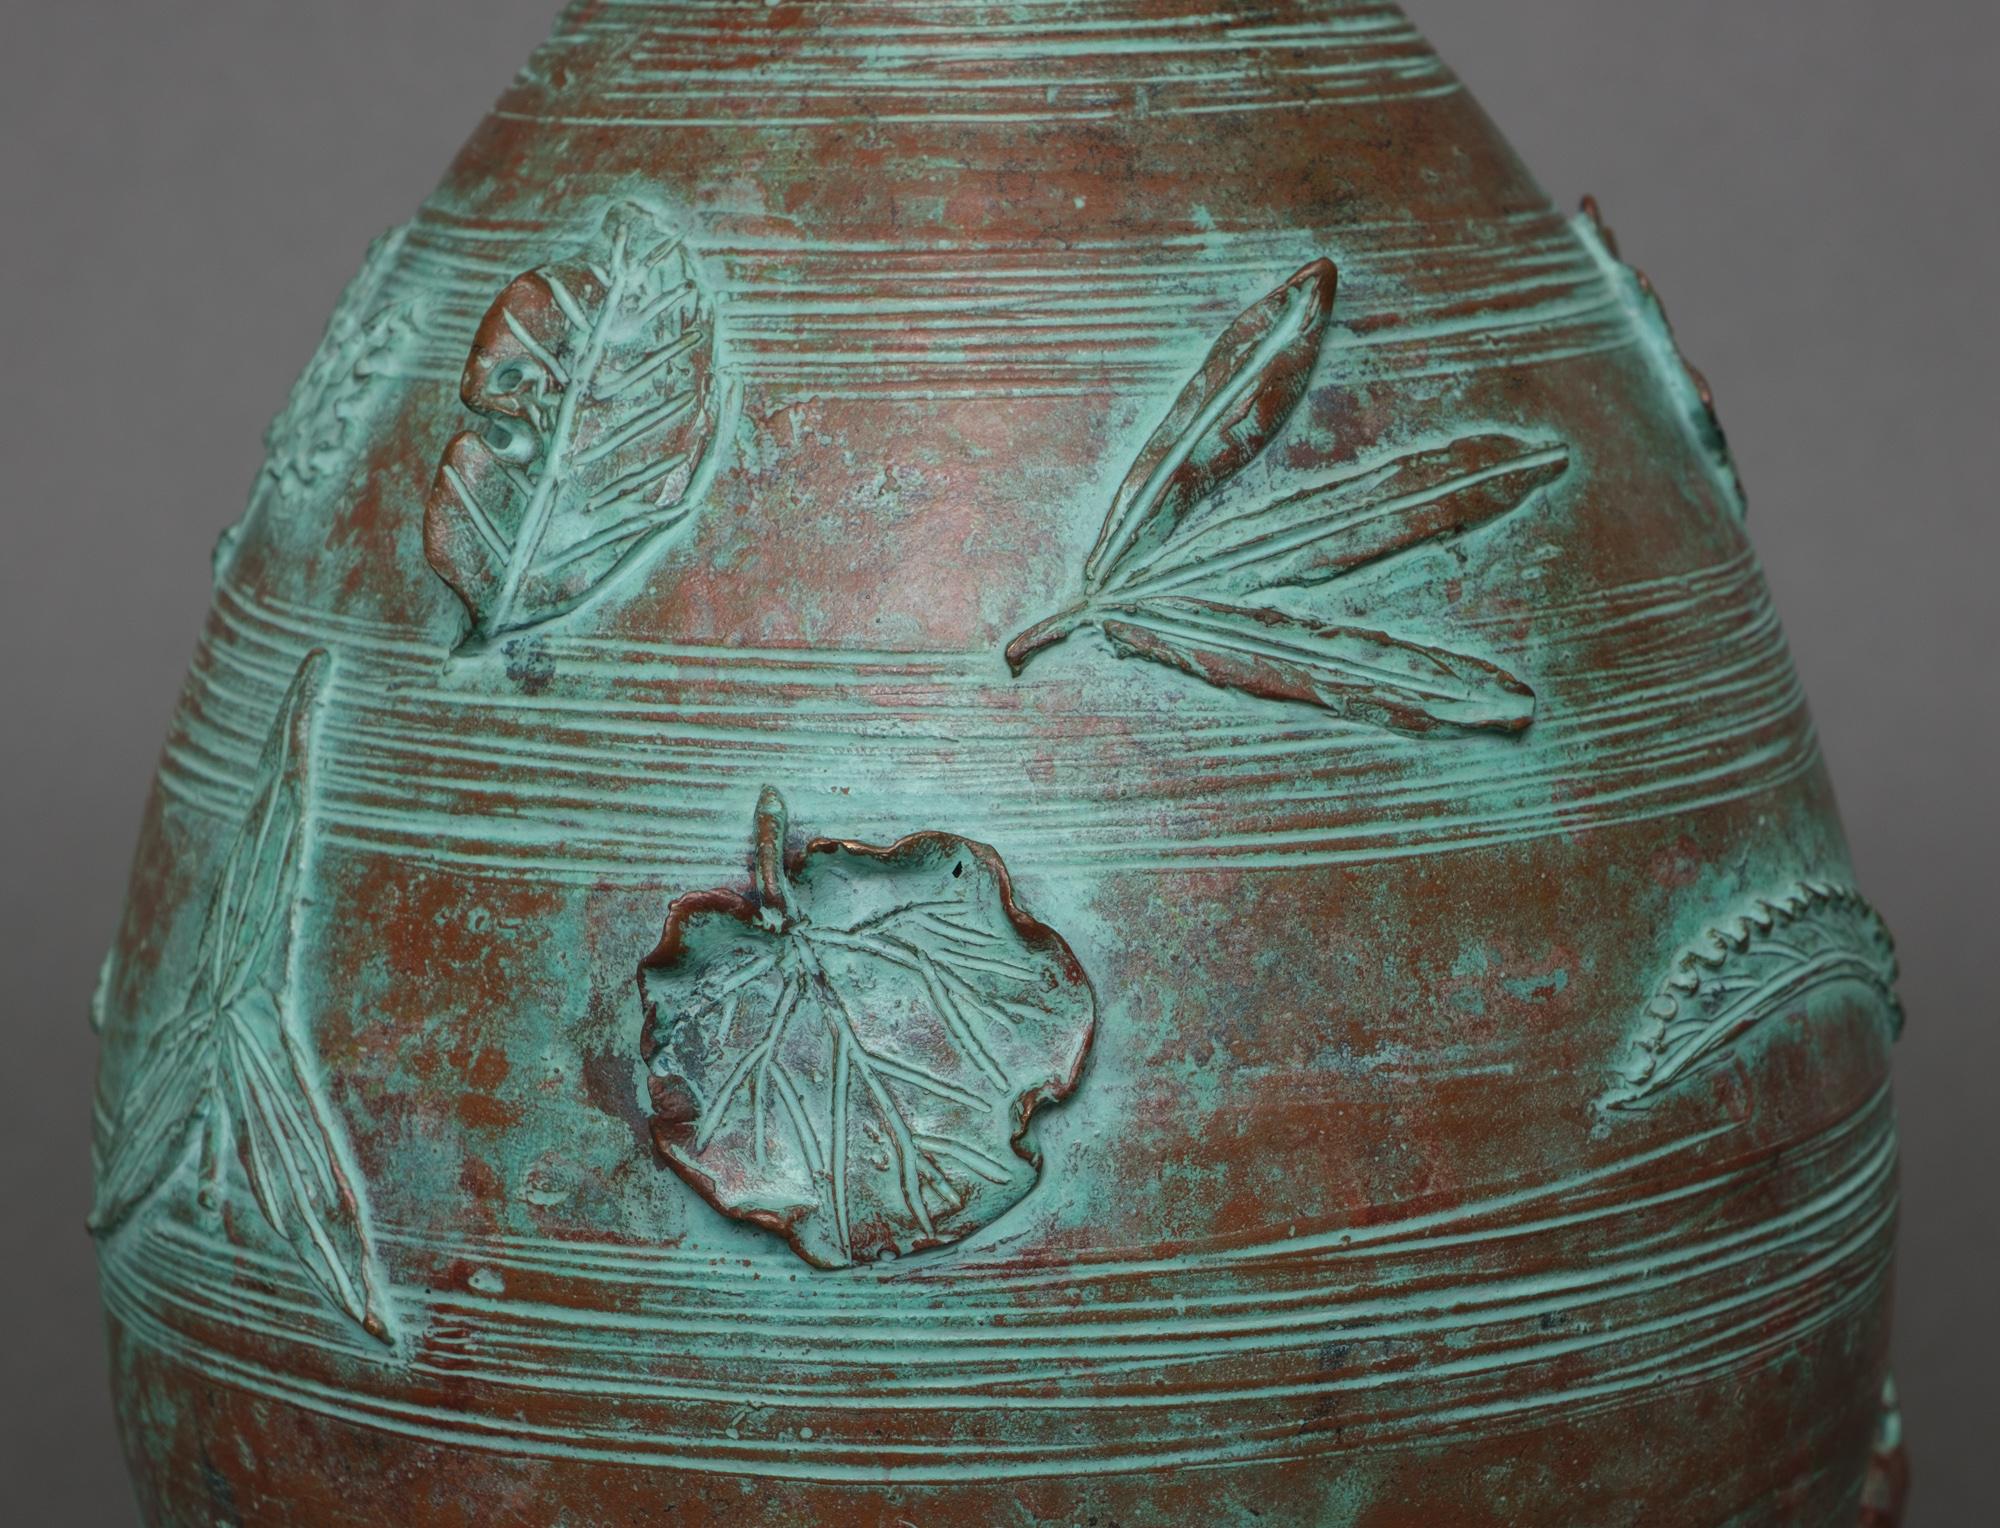 Schöne eiförmige Vase aus Bronze mit einer schönen eisgrünen Patina. Verziert mit einem durchgehenden Hochrelief-Motiv aus verschiedenen Blättern, die von starken Windböen um die Vase herumgefegt werden. 

Am unteren Rand vom Künstler Hirai Noboru